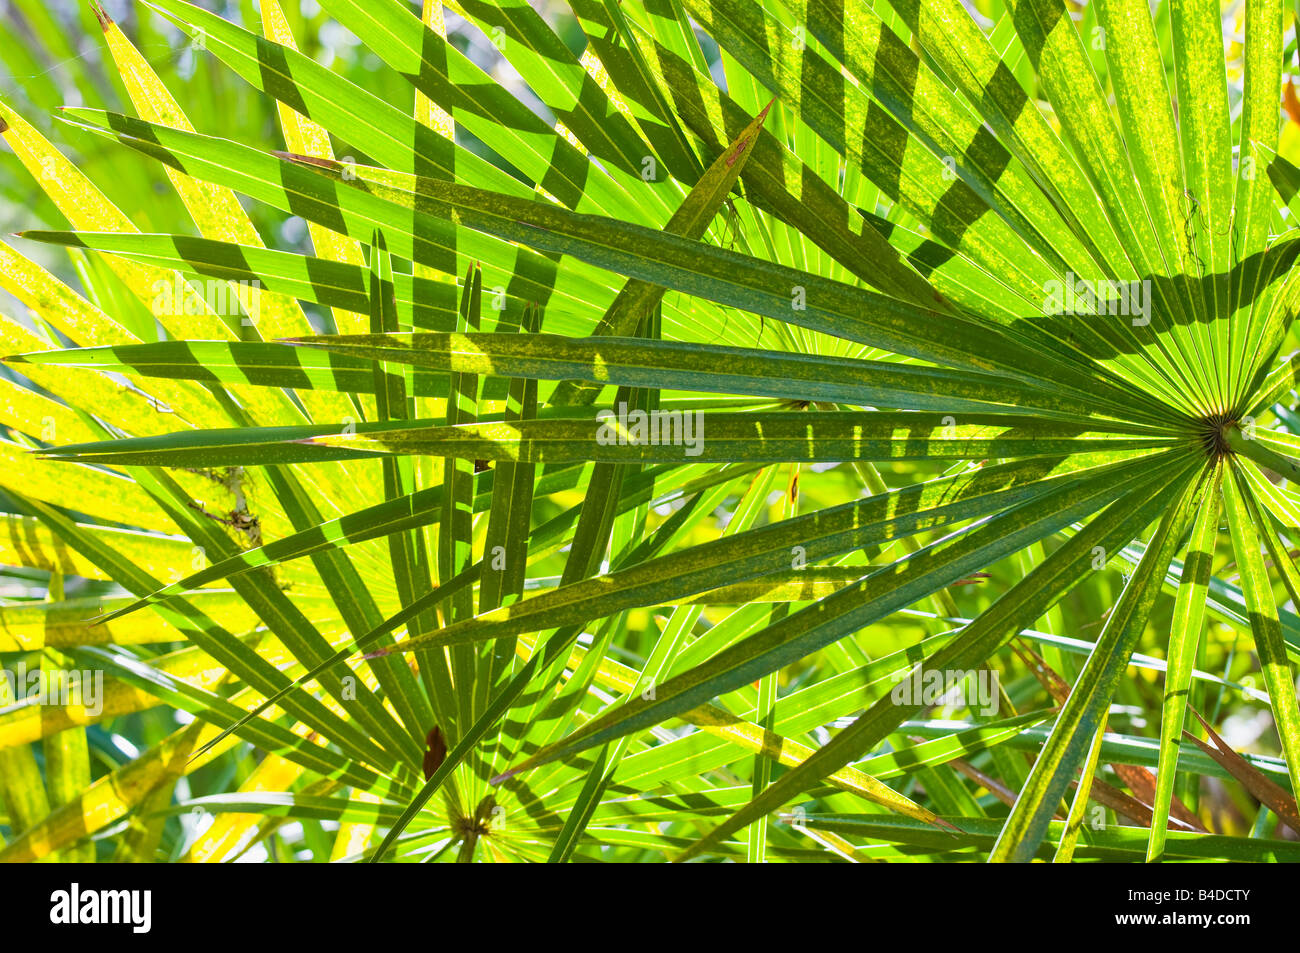 Feuilles de la serenoa repens le sabal palm comme une plante qui pousse en touffes ou fourrés denses dans les terres côtières de sable Banque D'Images